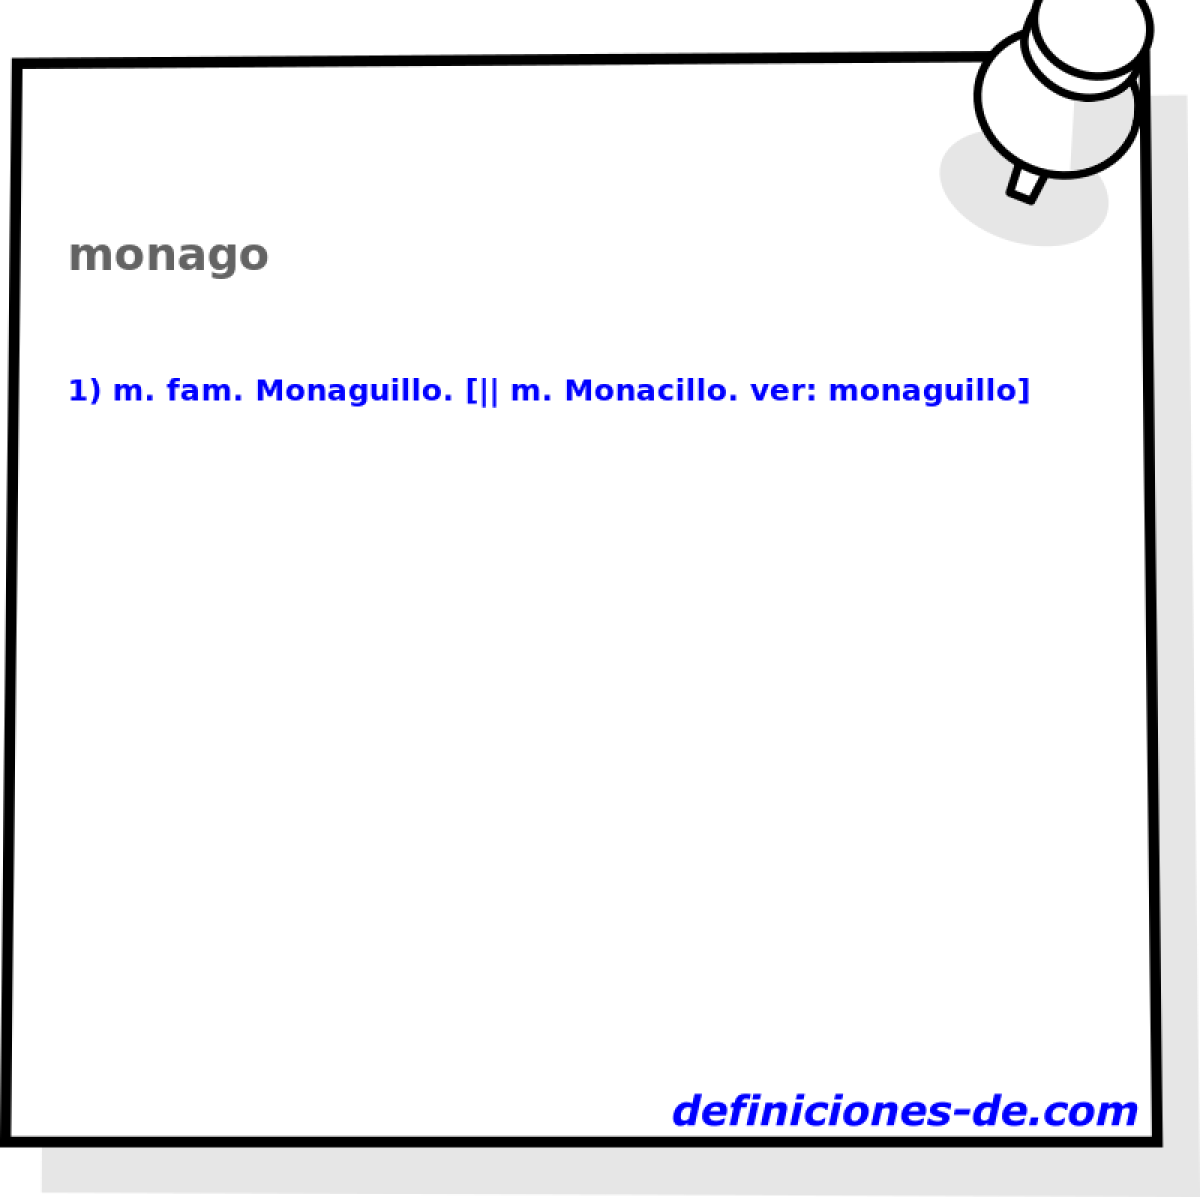 monago 